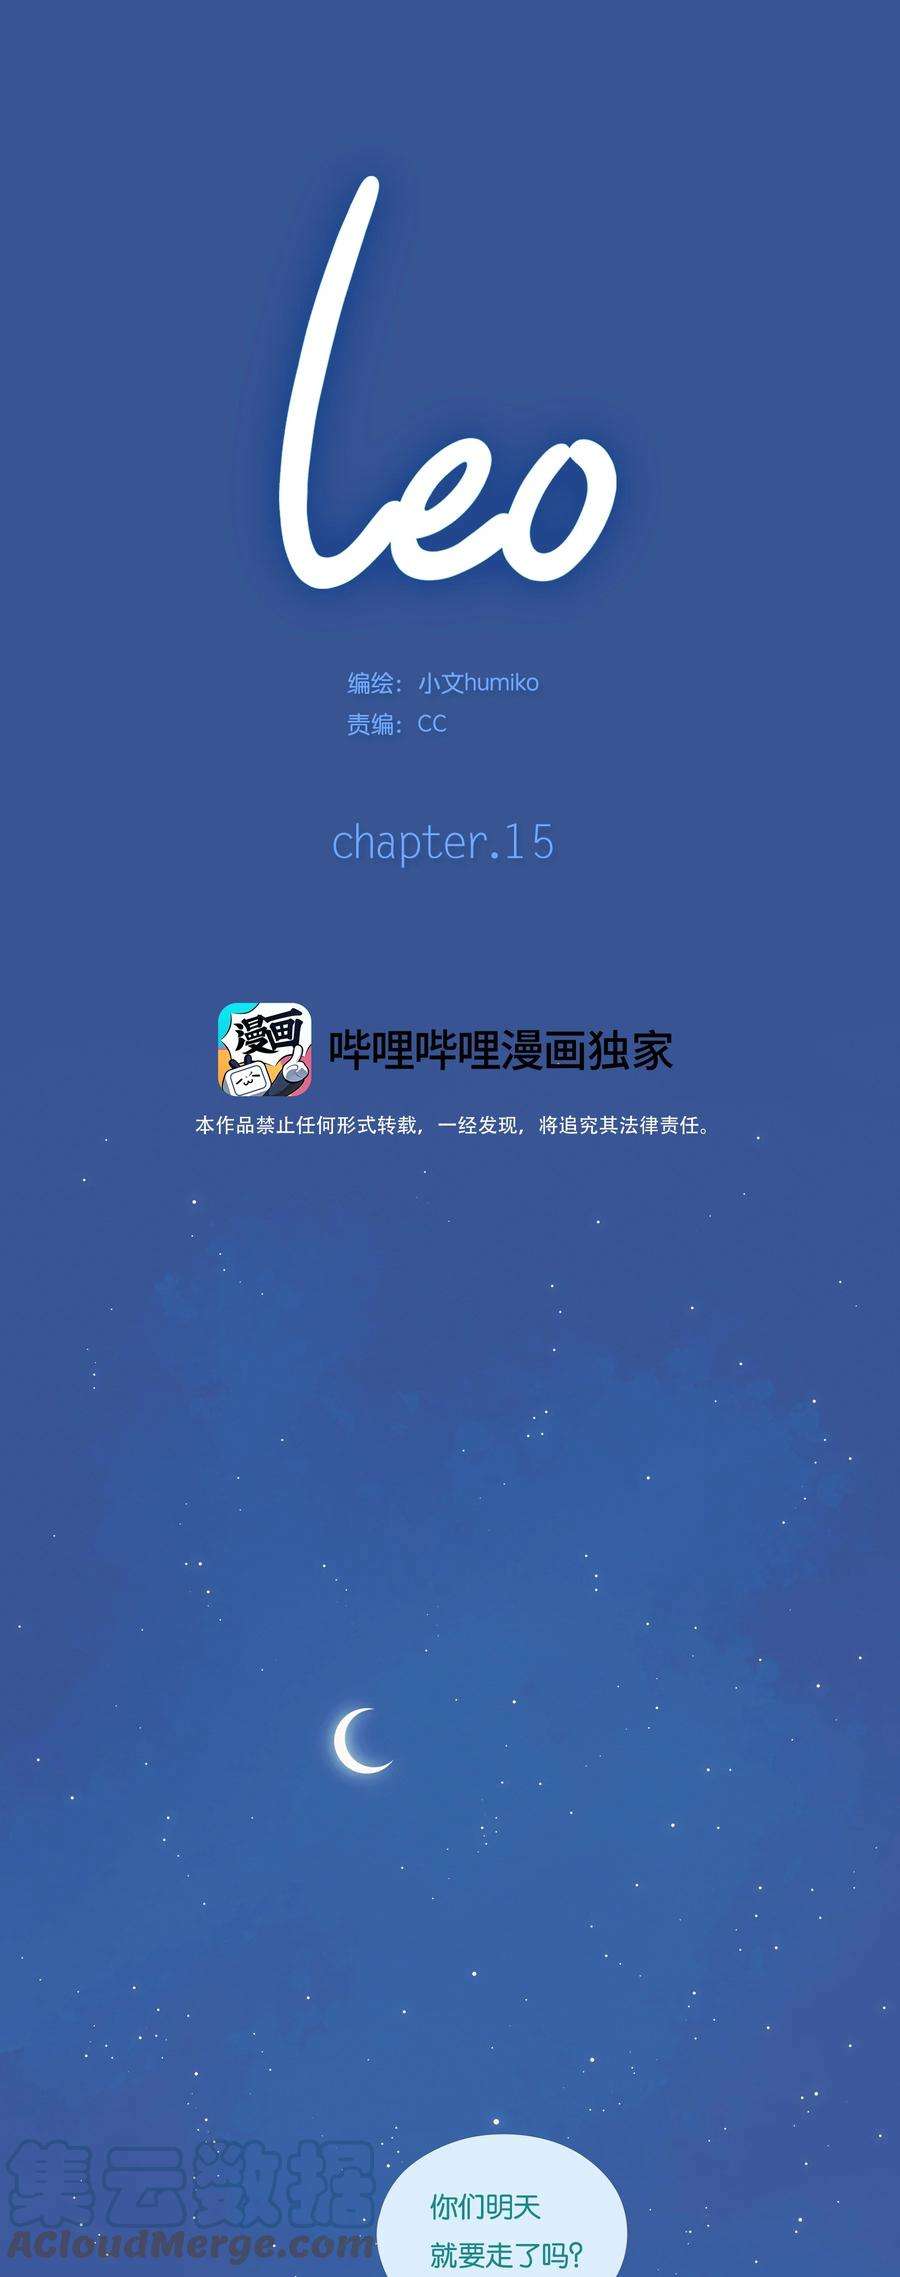 利奥15 chapter.15